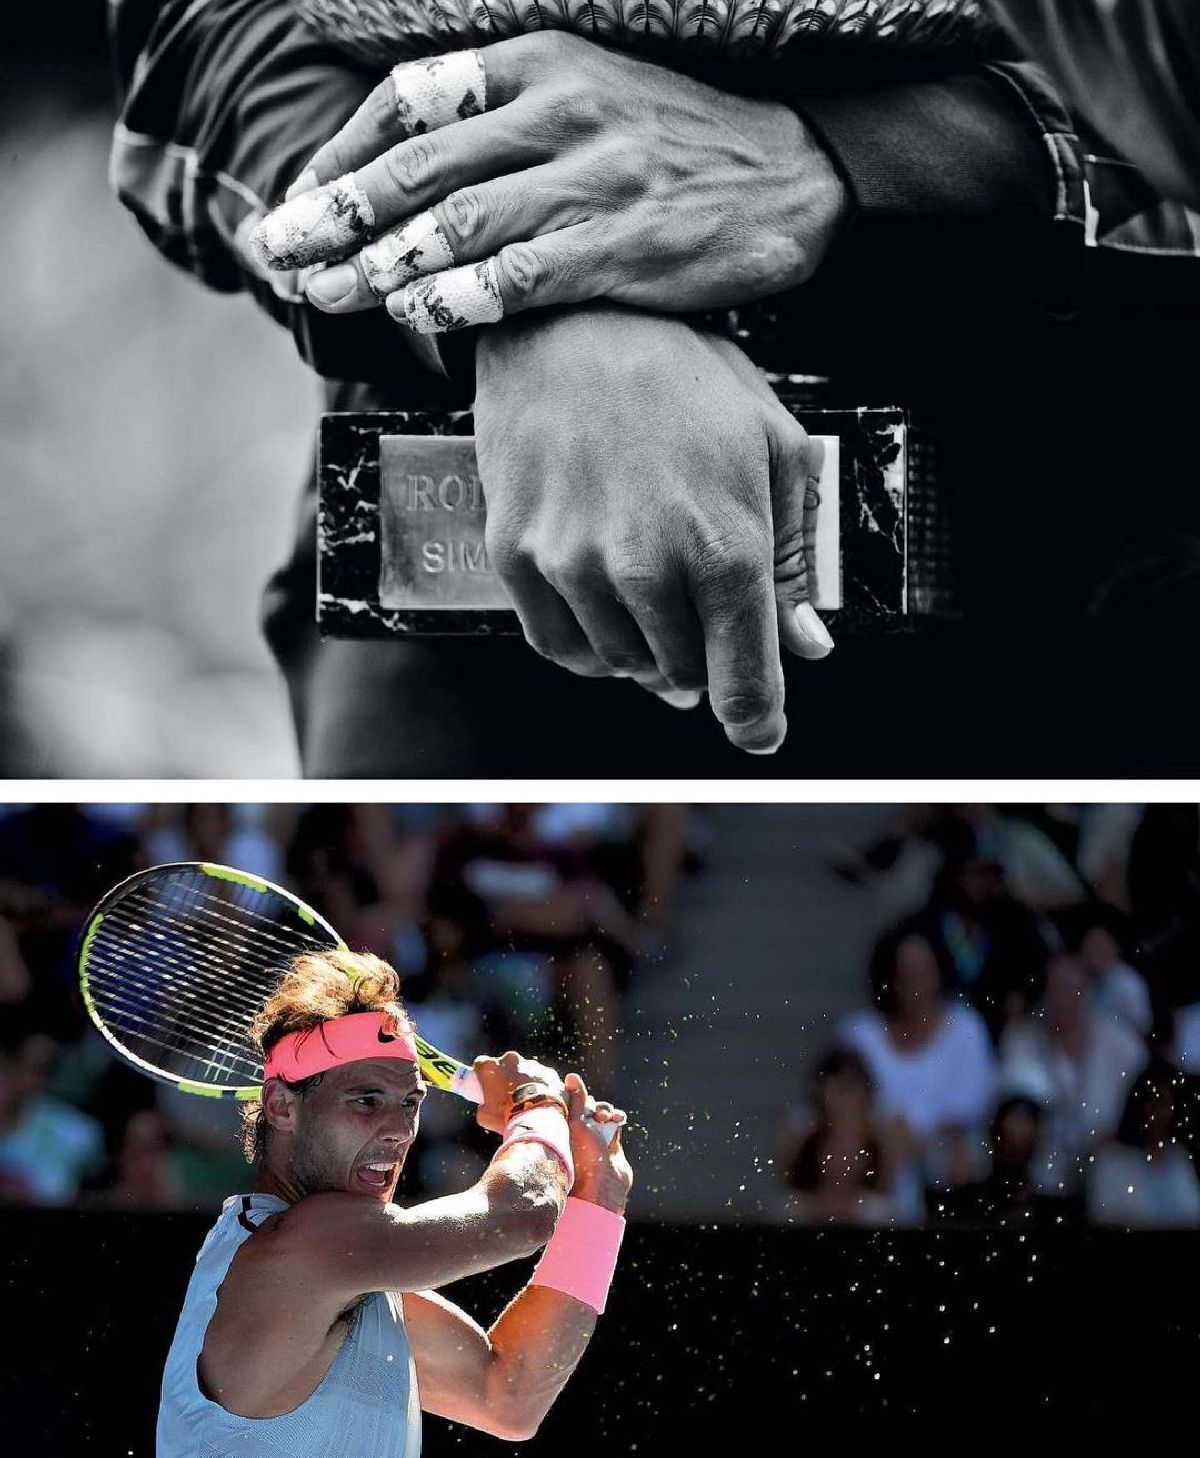 Corinne Dubreuil - fotografa freelance care a transformat pasiunea pentru tenis în artă